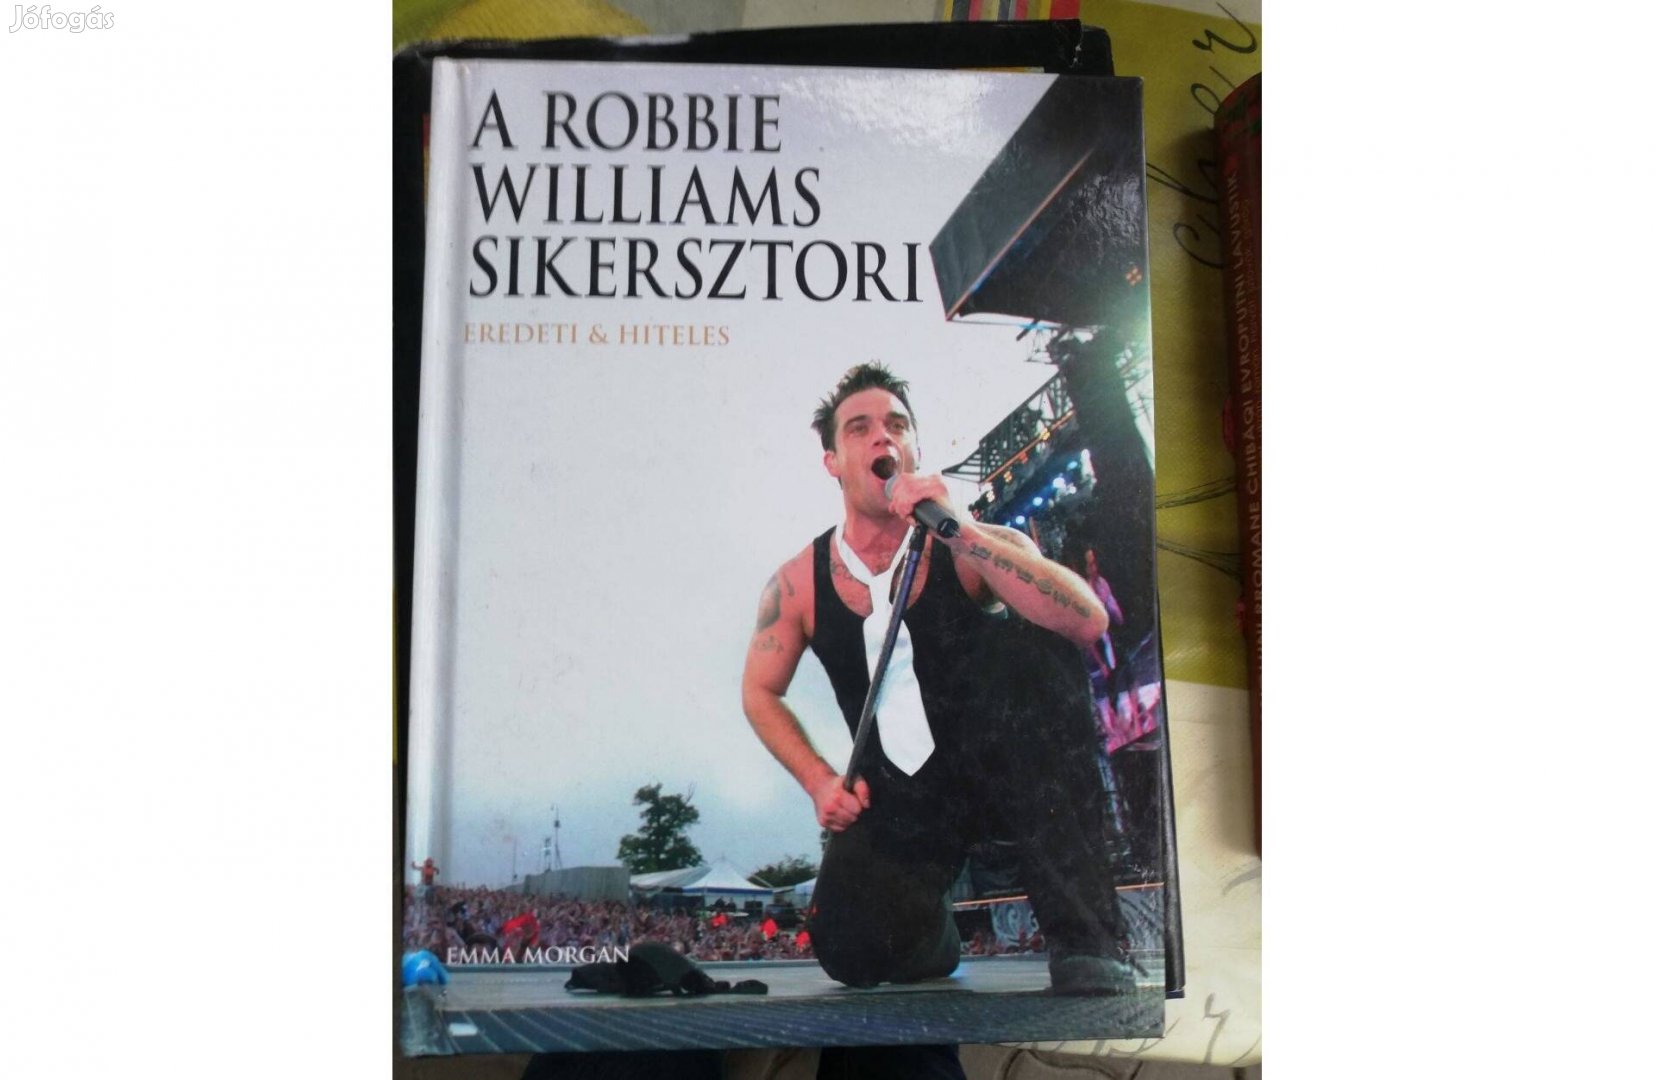 A Robbie Williams Sikersztori c. könyve 800 forintért eladó